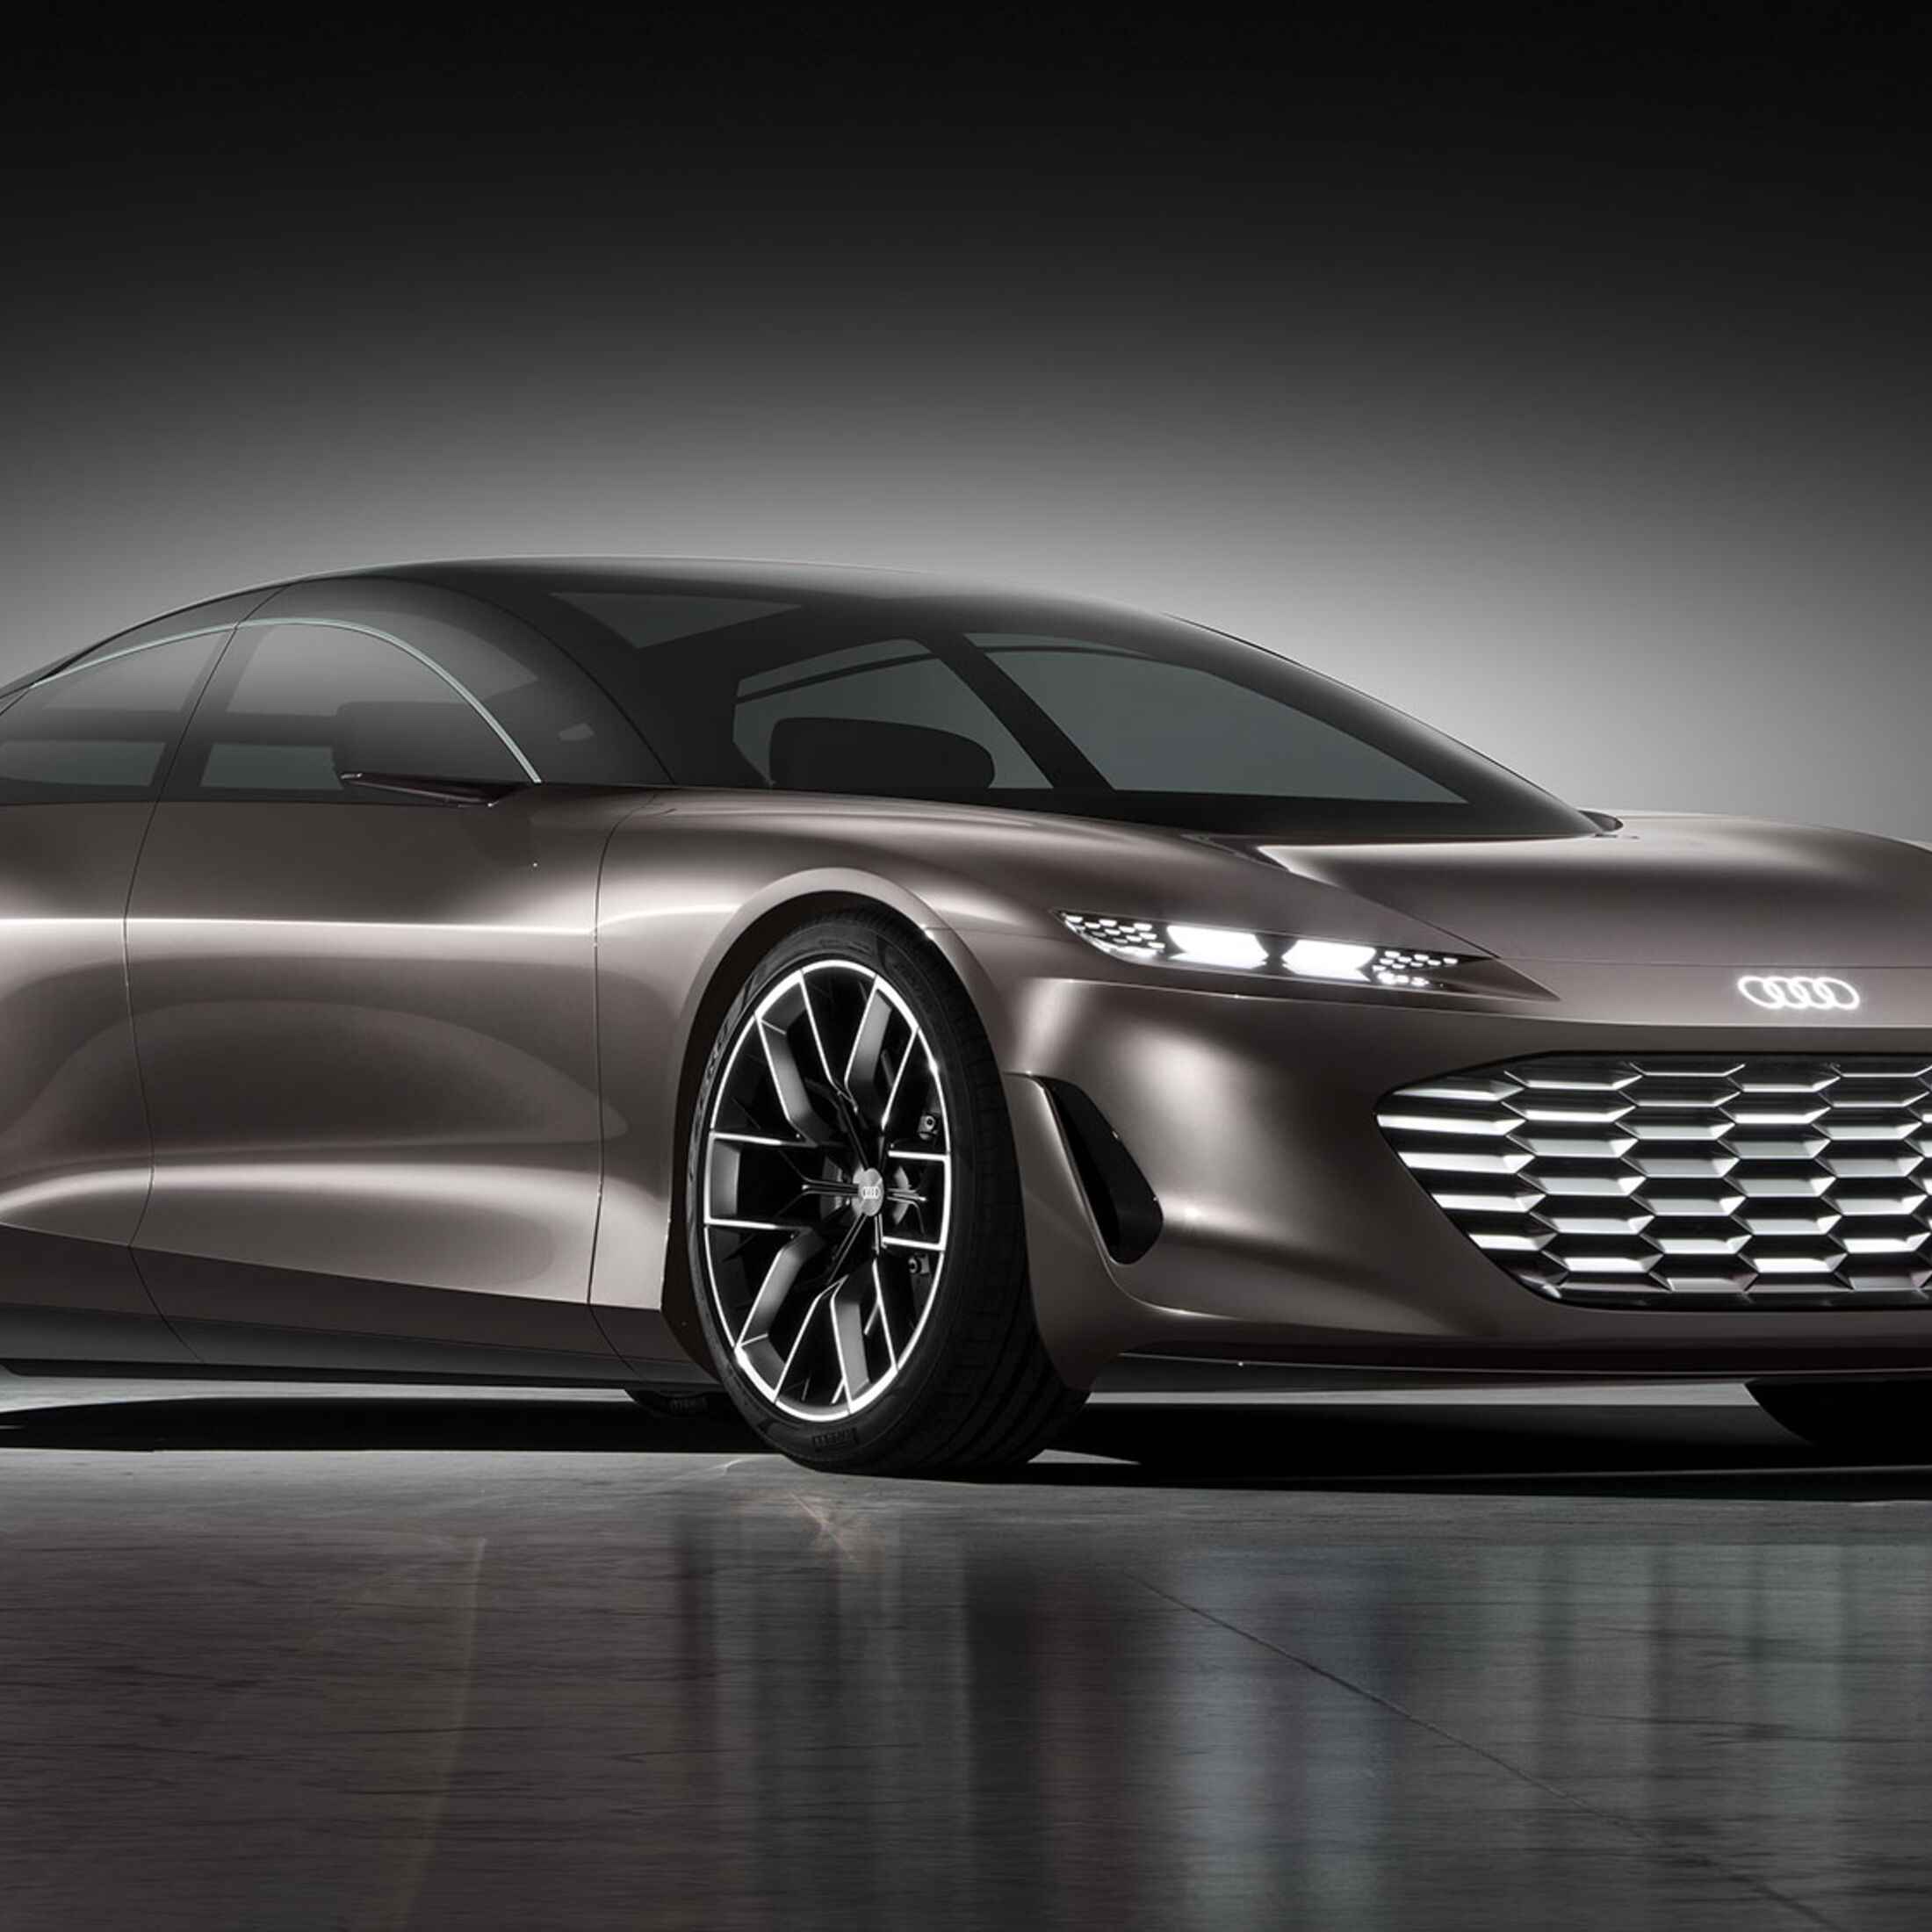 Warum das Audi-Projekt erst 2027 seine volle Schlagkraft entfaltet